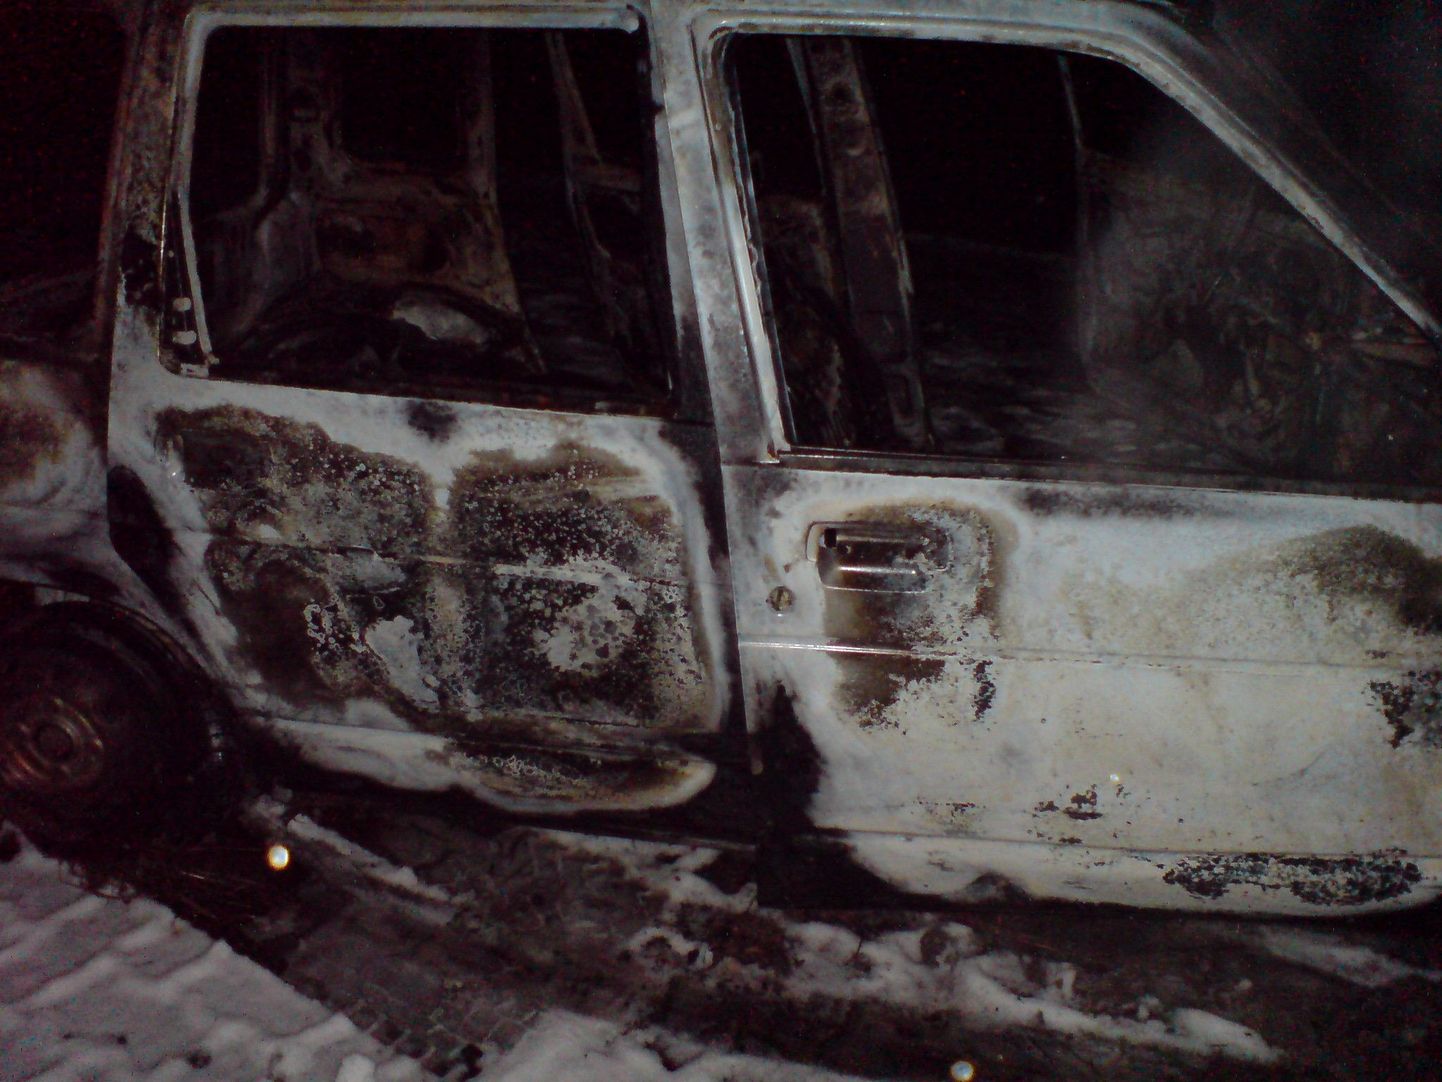 Daewoo Tico sai tules sedavõrd kannatada, et esialgu polnud võimalik tuvastada isegi auto marki.